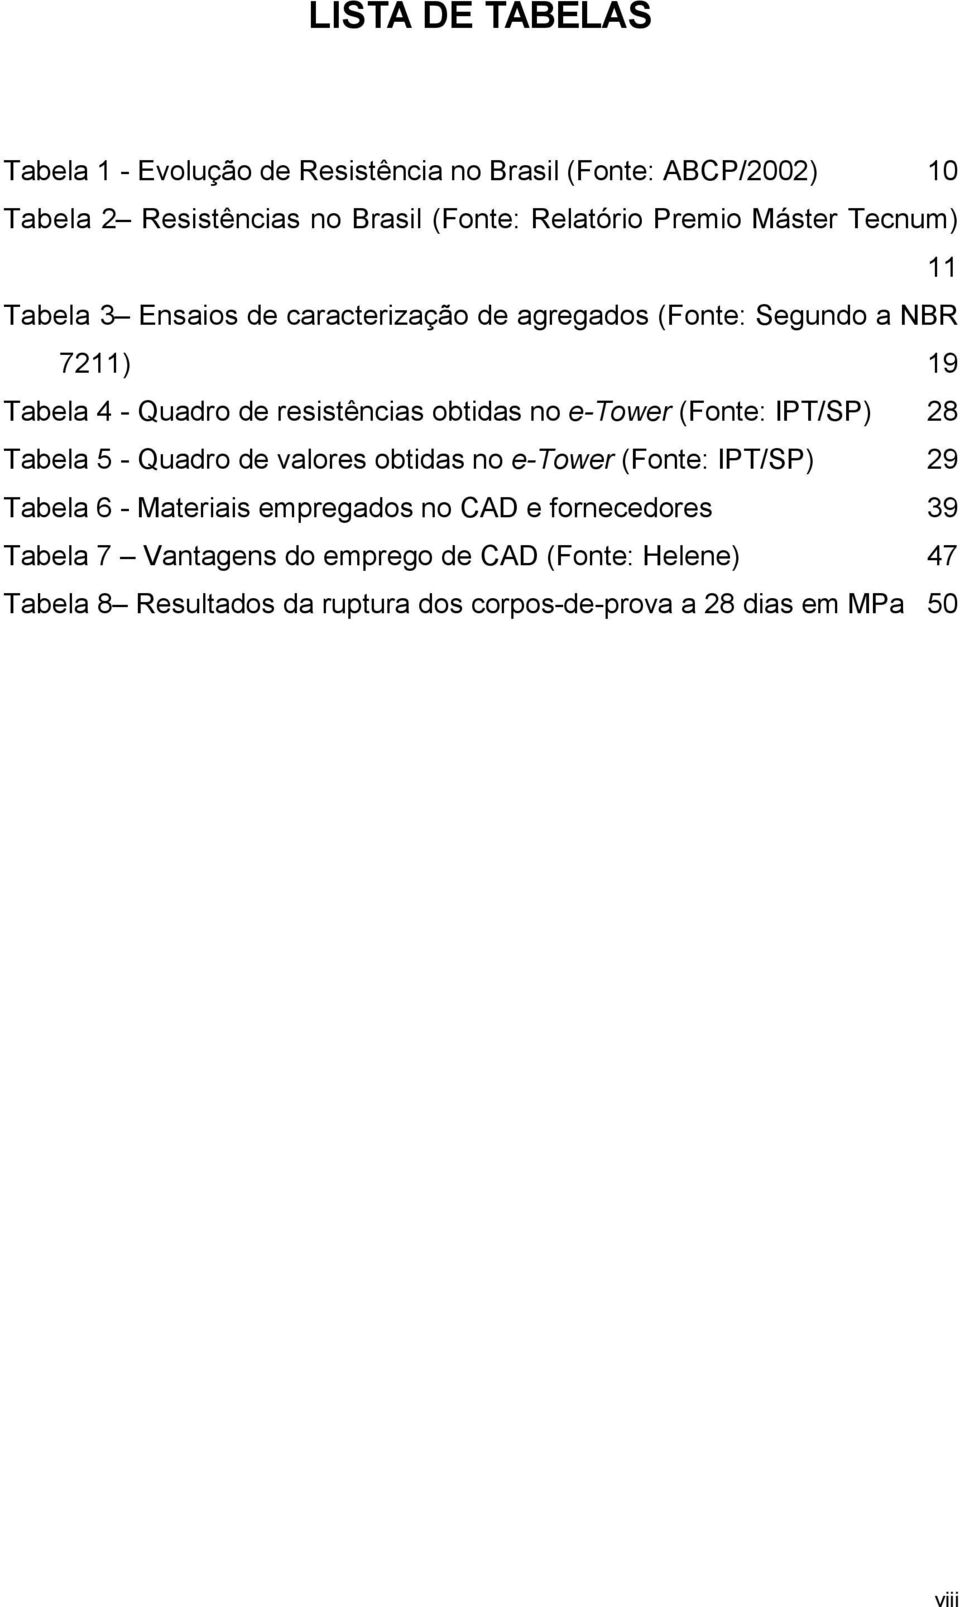 e-tower (Fonte: IPT/SP) 28 Tabela 5 - Quadro de valores obtidas no e-tower (Fonte: IPT/SP) 29 Tabela 6 - Materiais empregados no CAD e